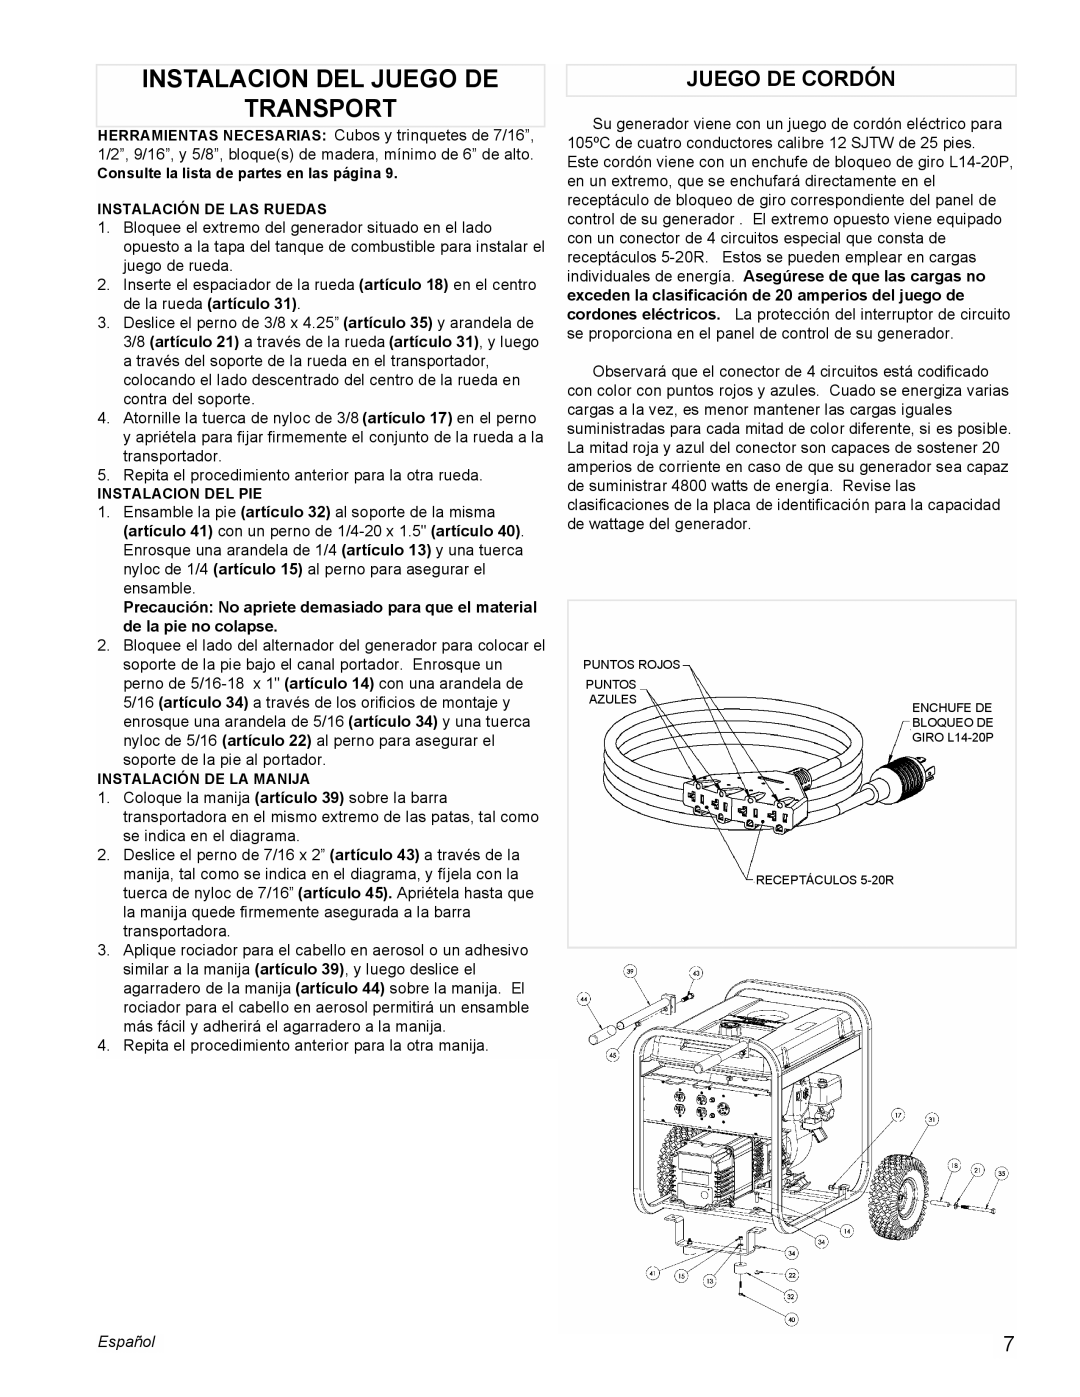 Powermate PM0525501 manual Instalacion Del Juego De Transport, Juego De Cordón, Español 